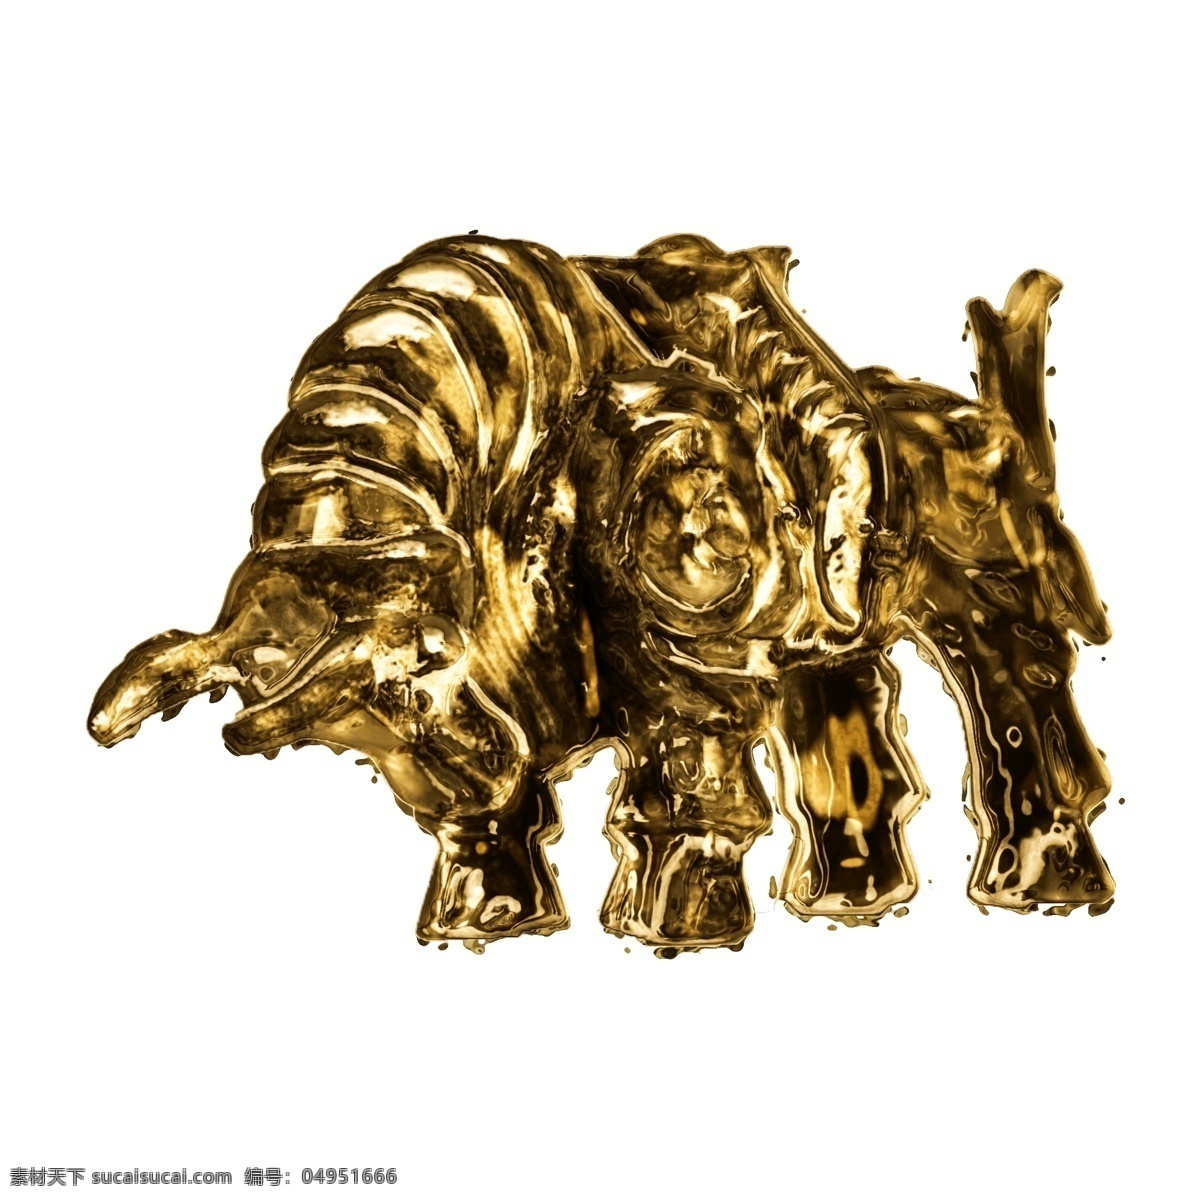 黄金 元素 强壮 质感 金牛 雕像 贴图 黄金质感 金属光泽 金属材质 立体底纹 强壮金牛 金属表面 质感金属 金牛雕塑